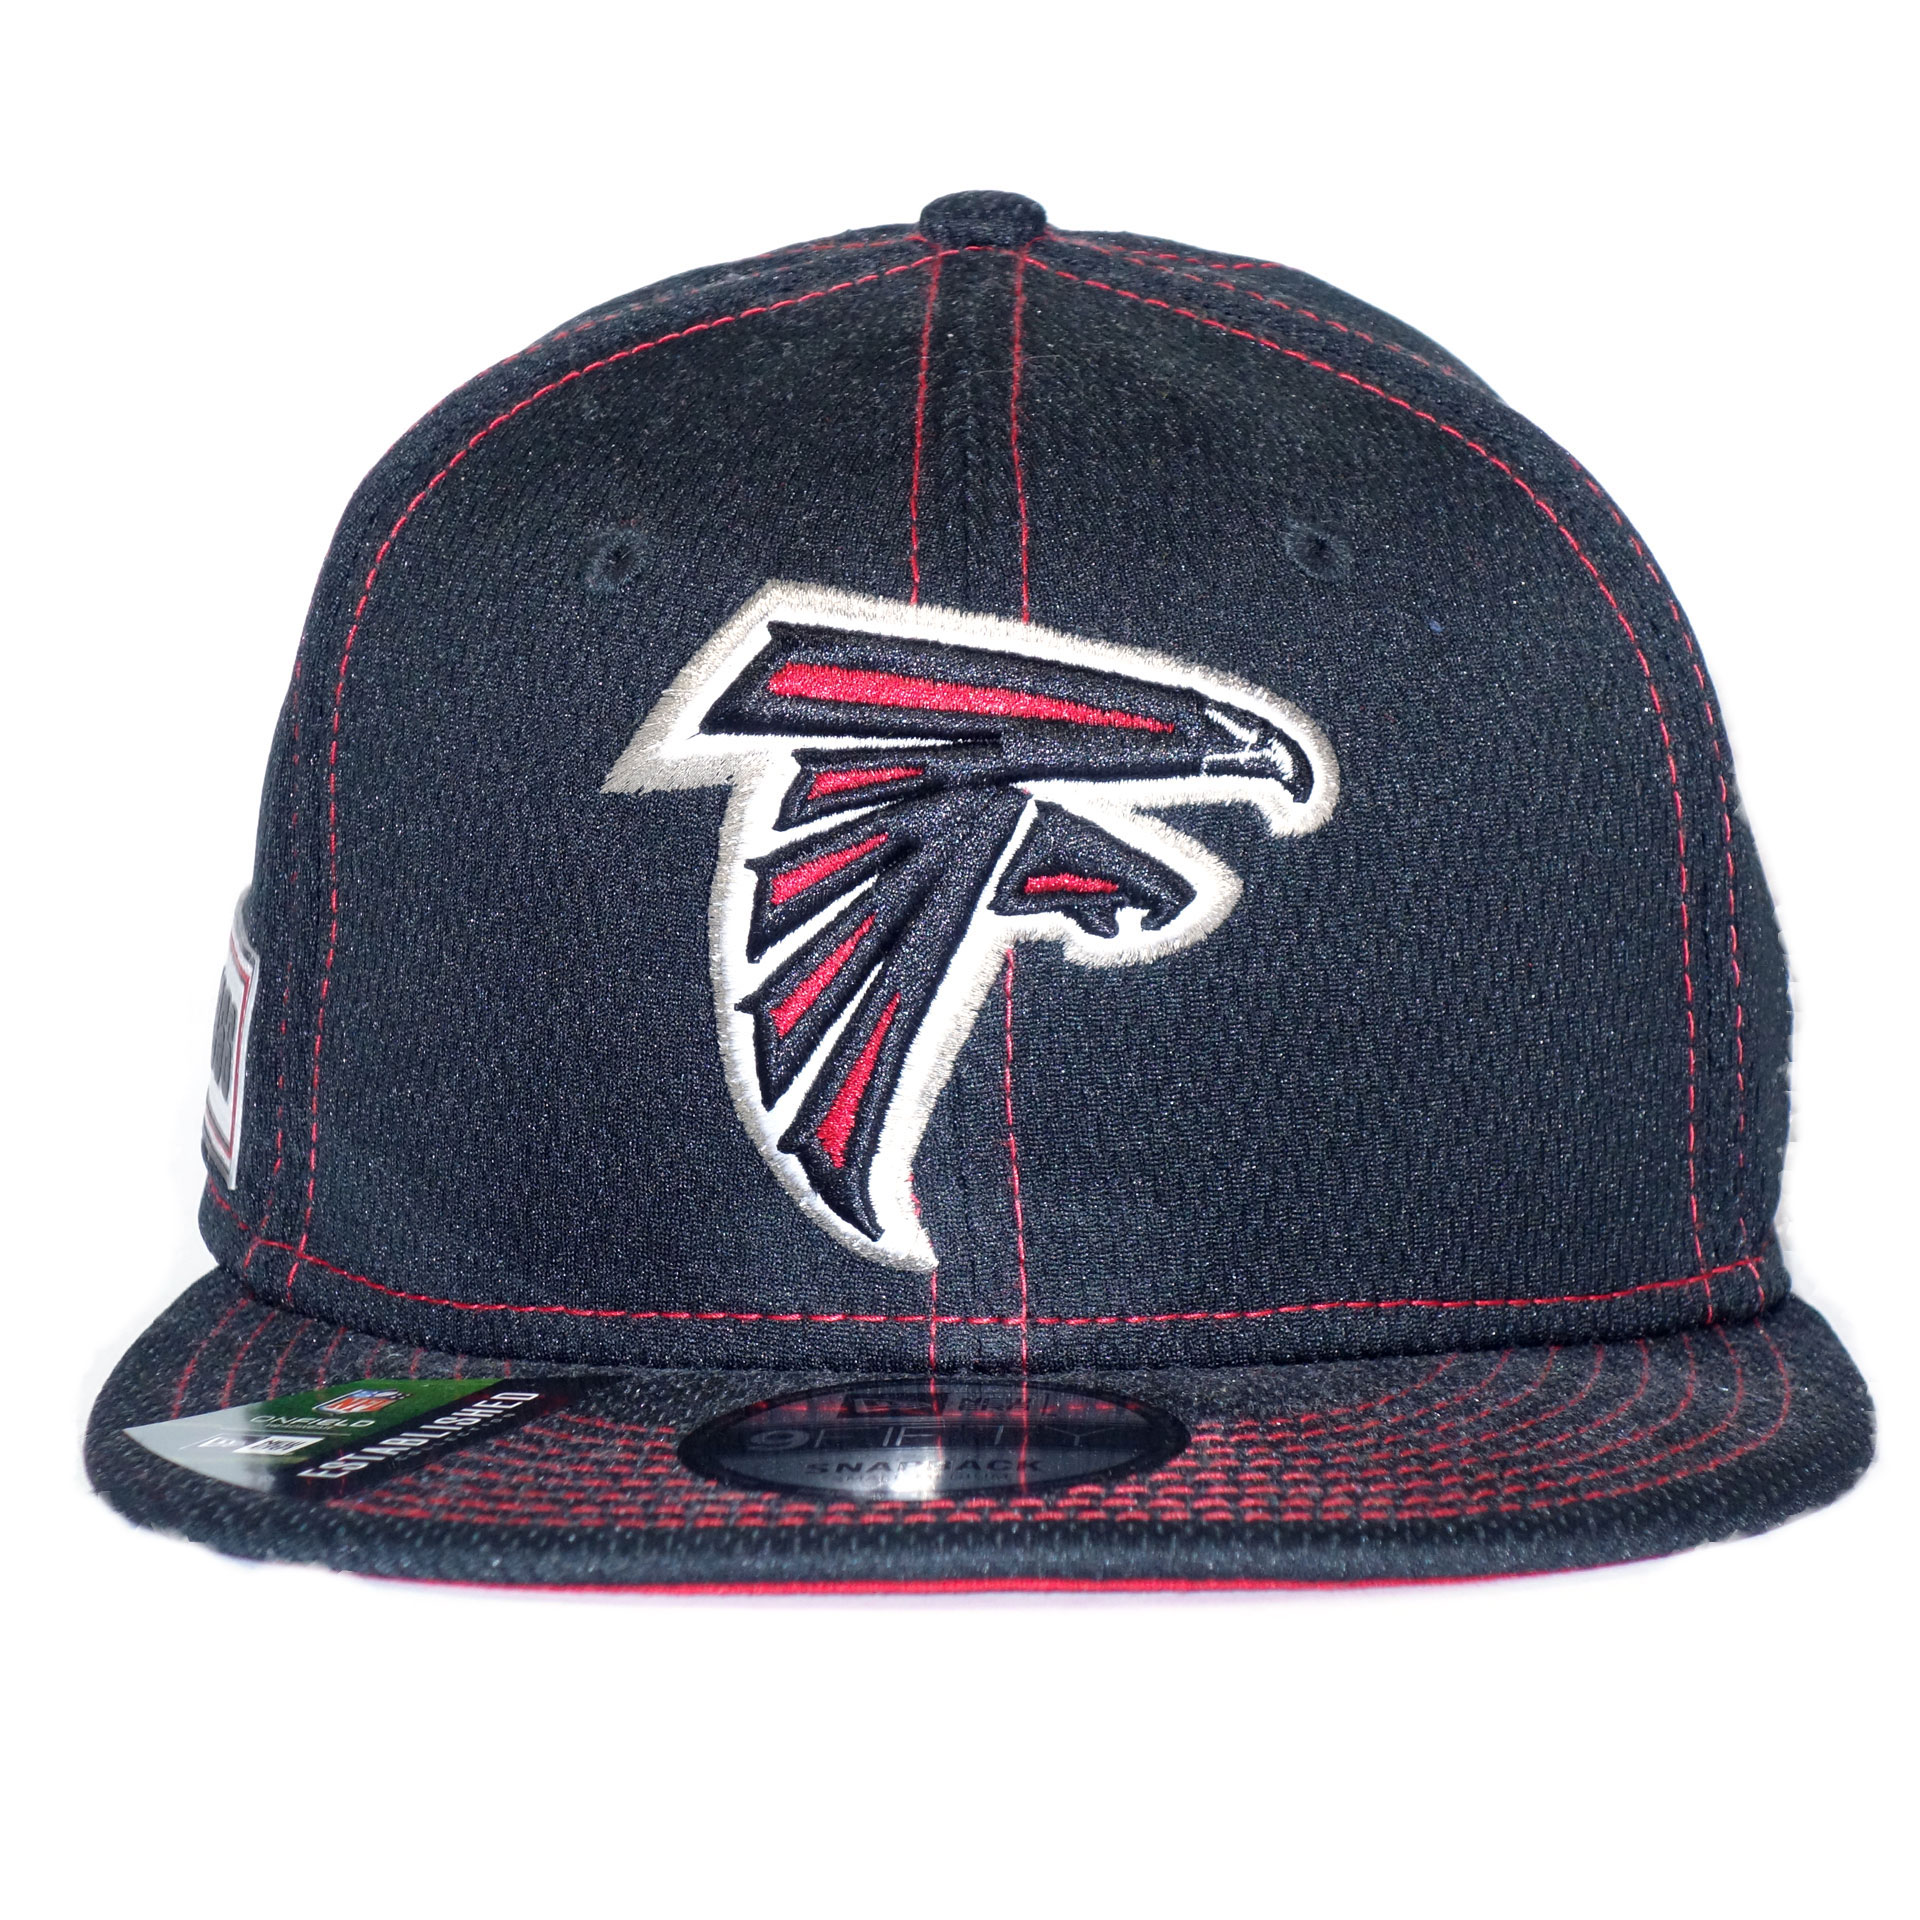 NFL New Era Cap Atlanta Falcons 